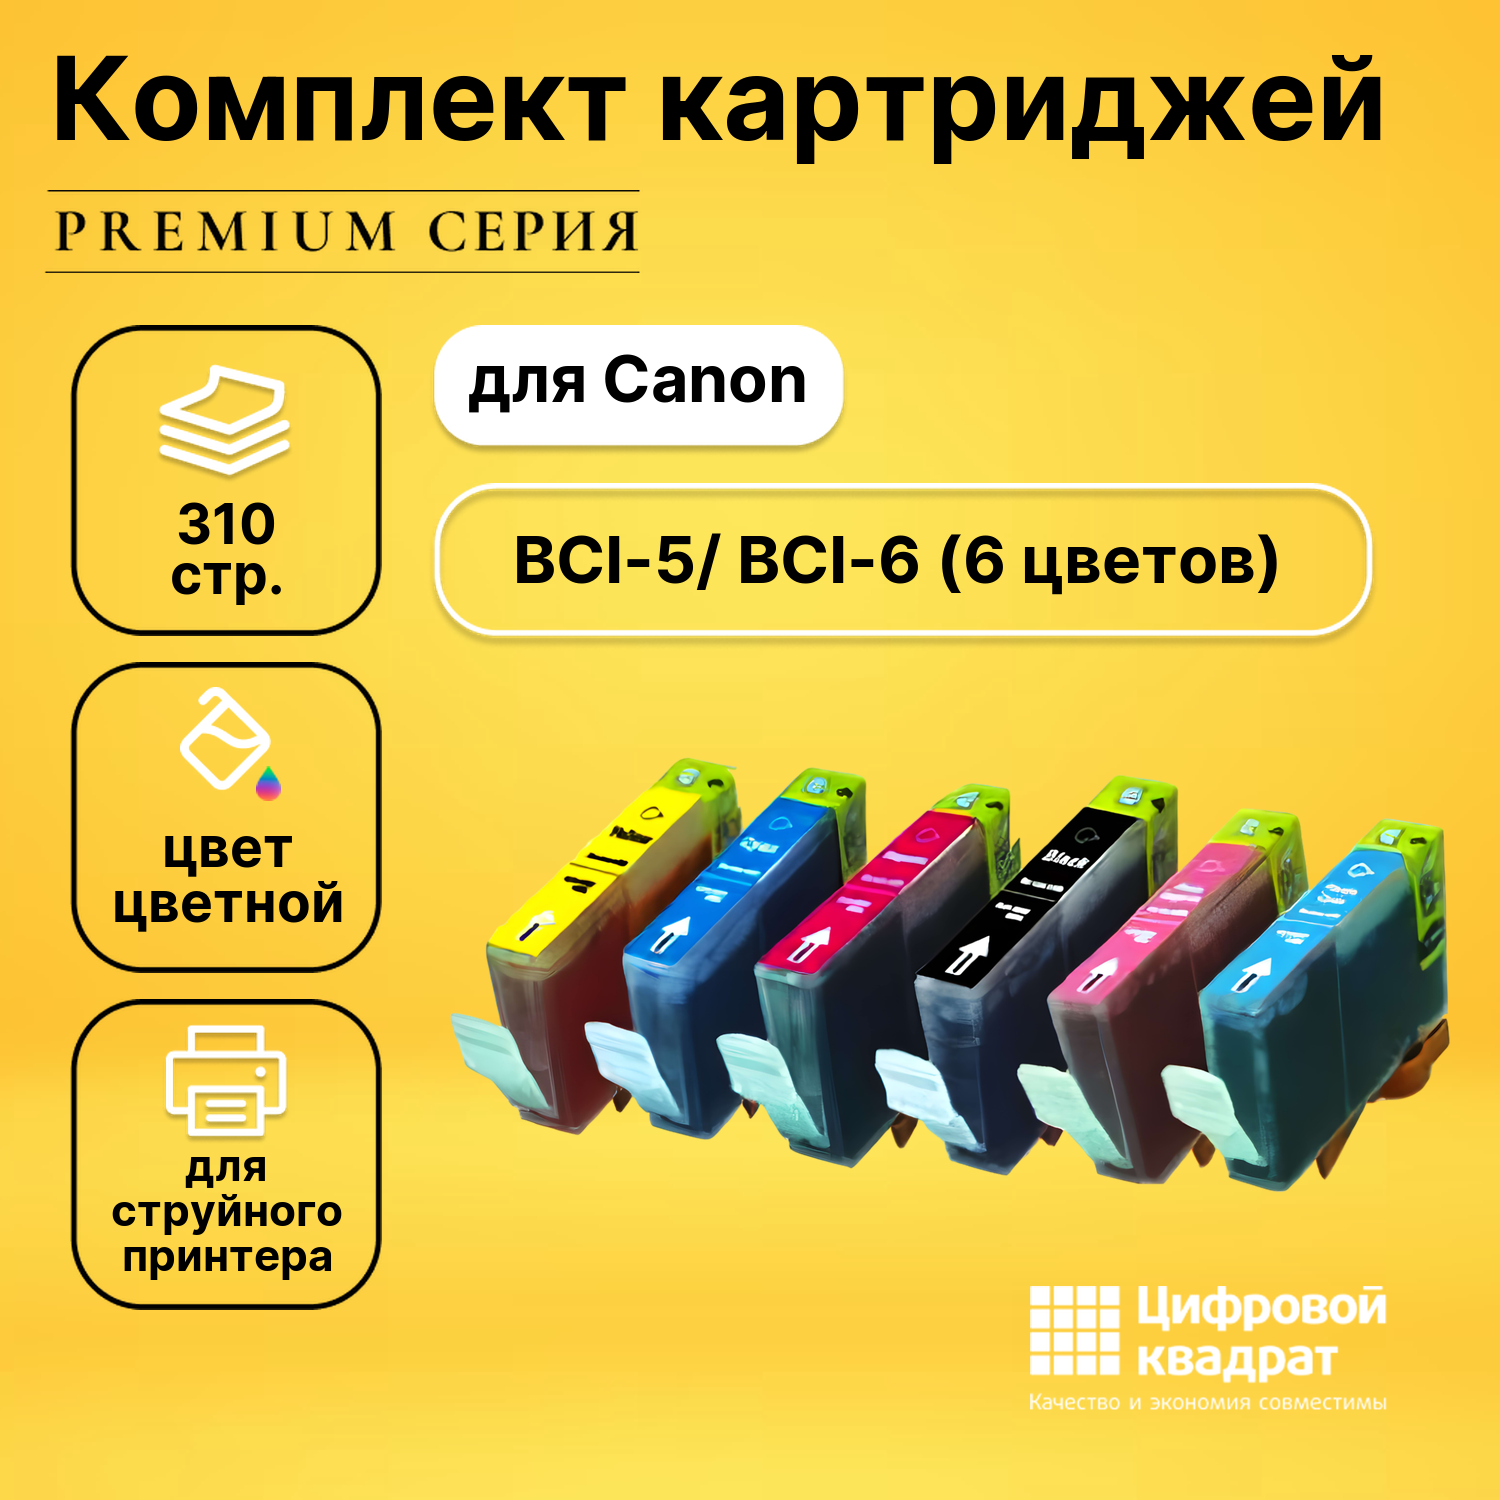 Набор картриджей DS BCI-5/ BCI-6 Canon 6 цветов совместимый